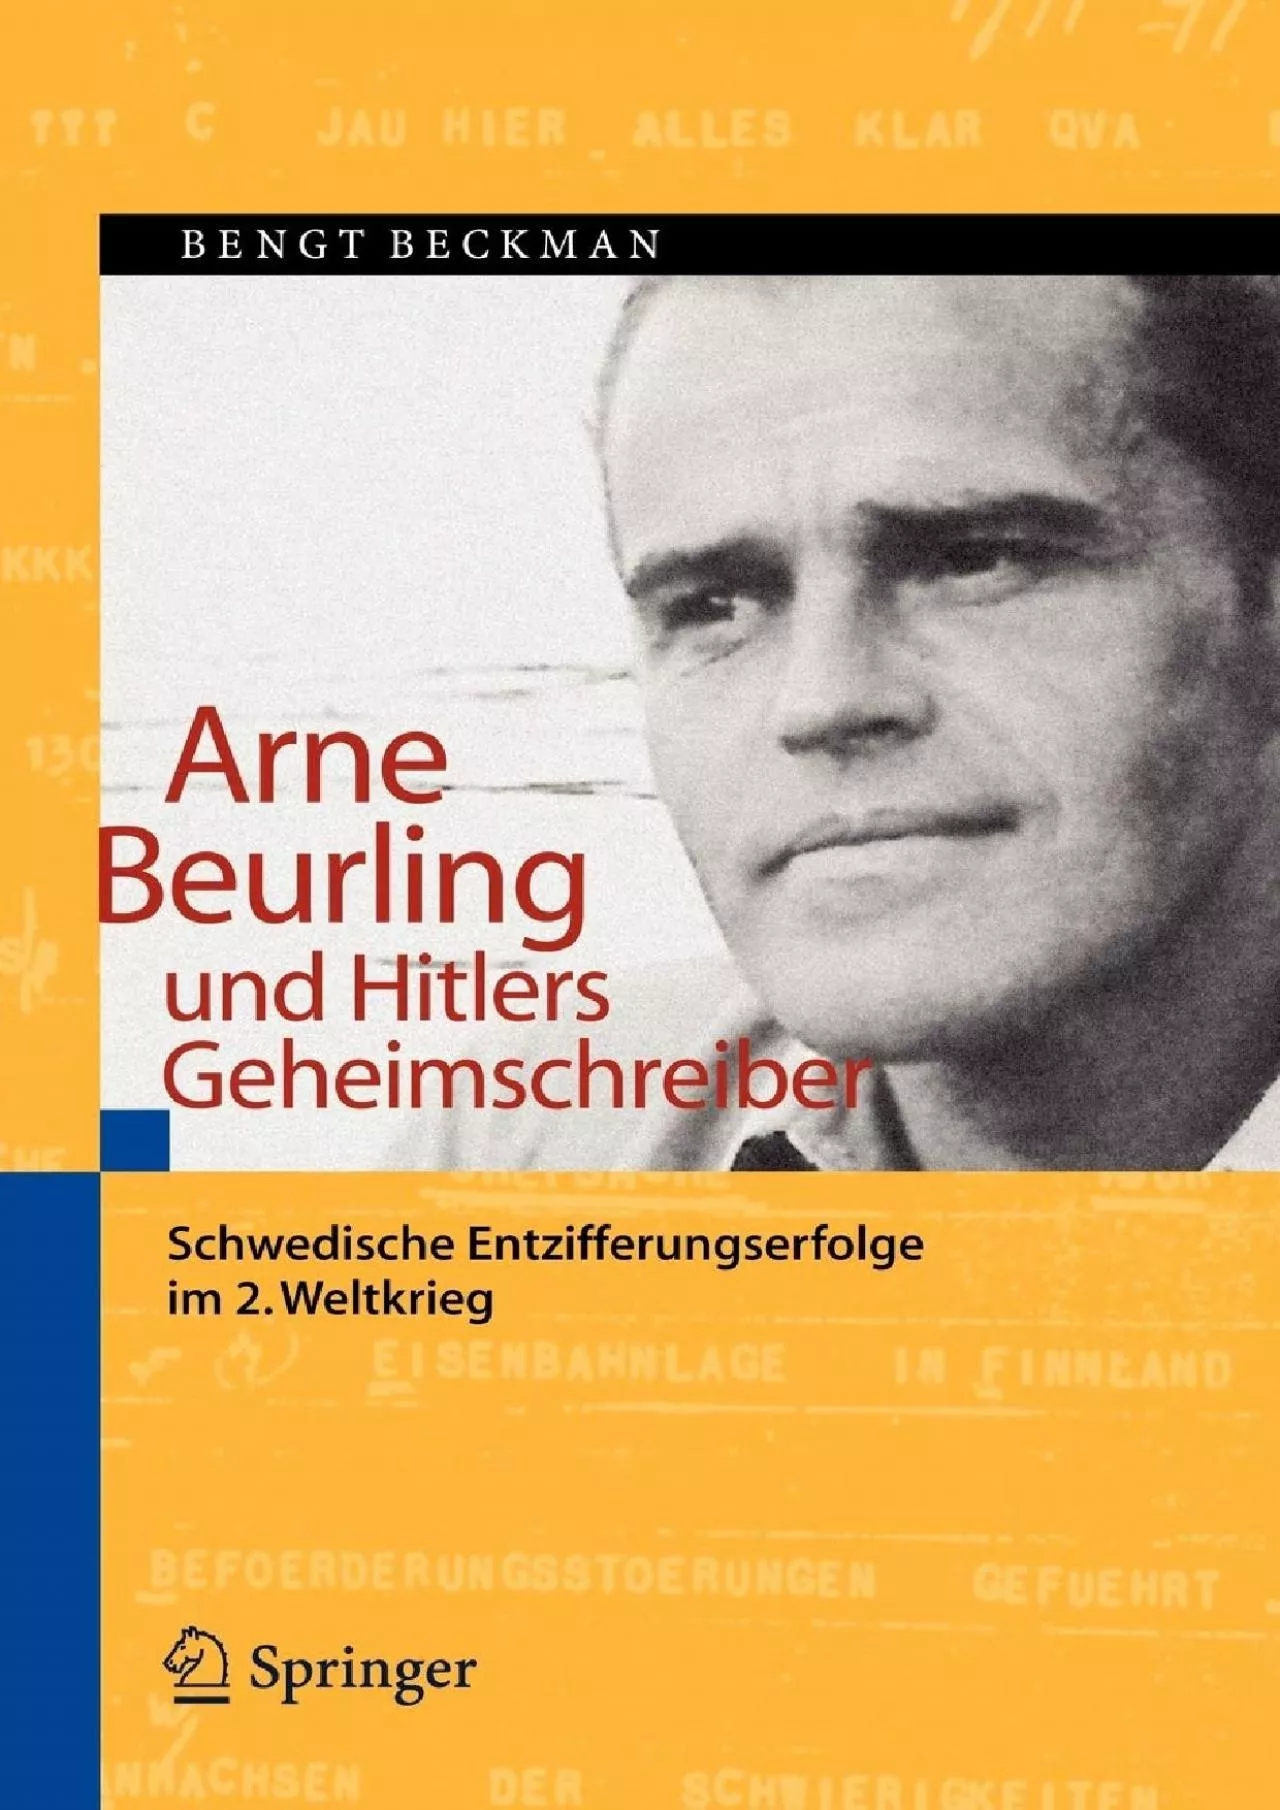 (EBOOK)-Arne Beurling und Hitlers Geheimschreiber: Schwedische Entzifferungserfolge im